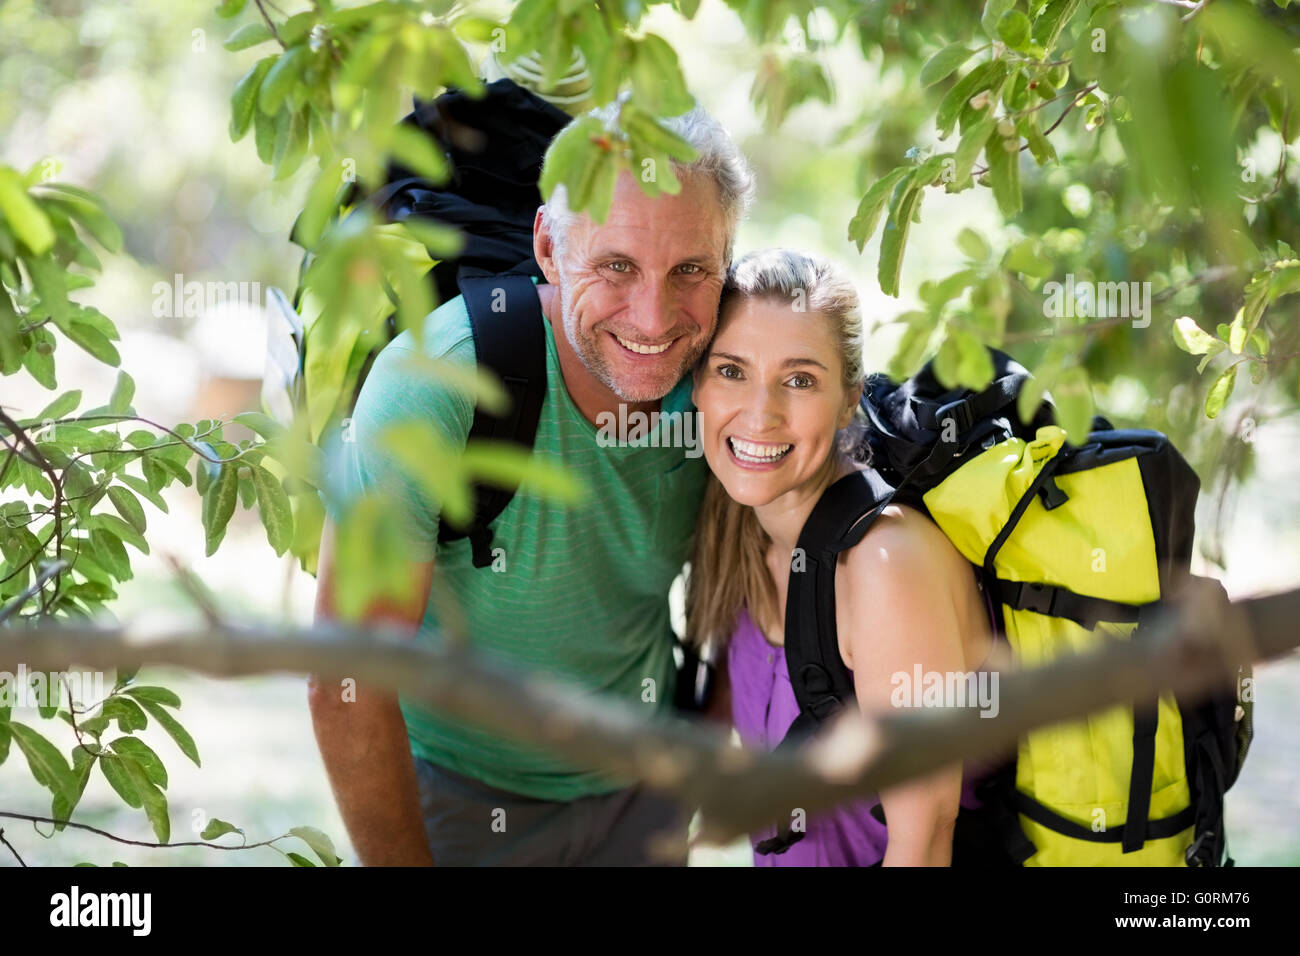 Couple smiling and posing lors d'une randonnée pédestre Banque D'Images